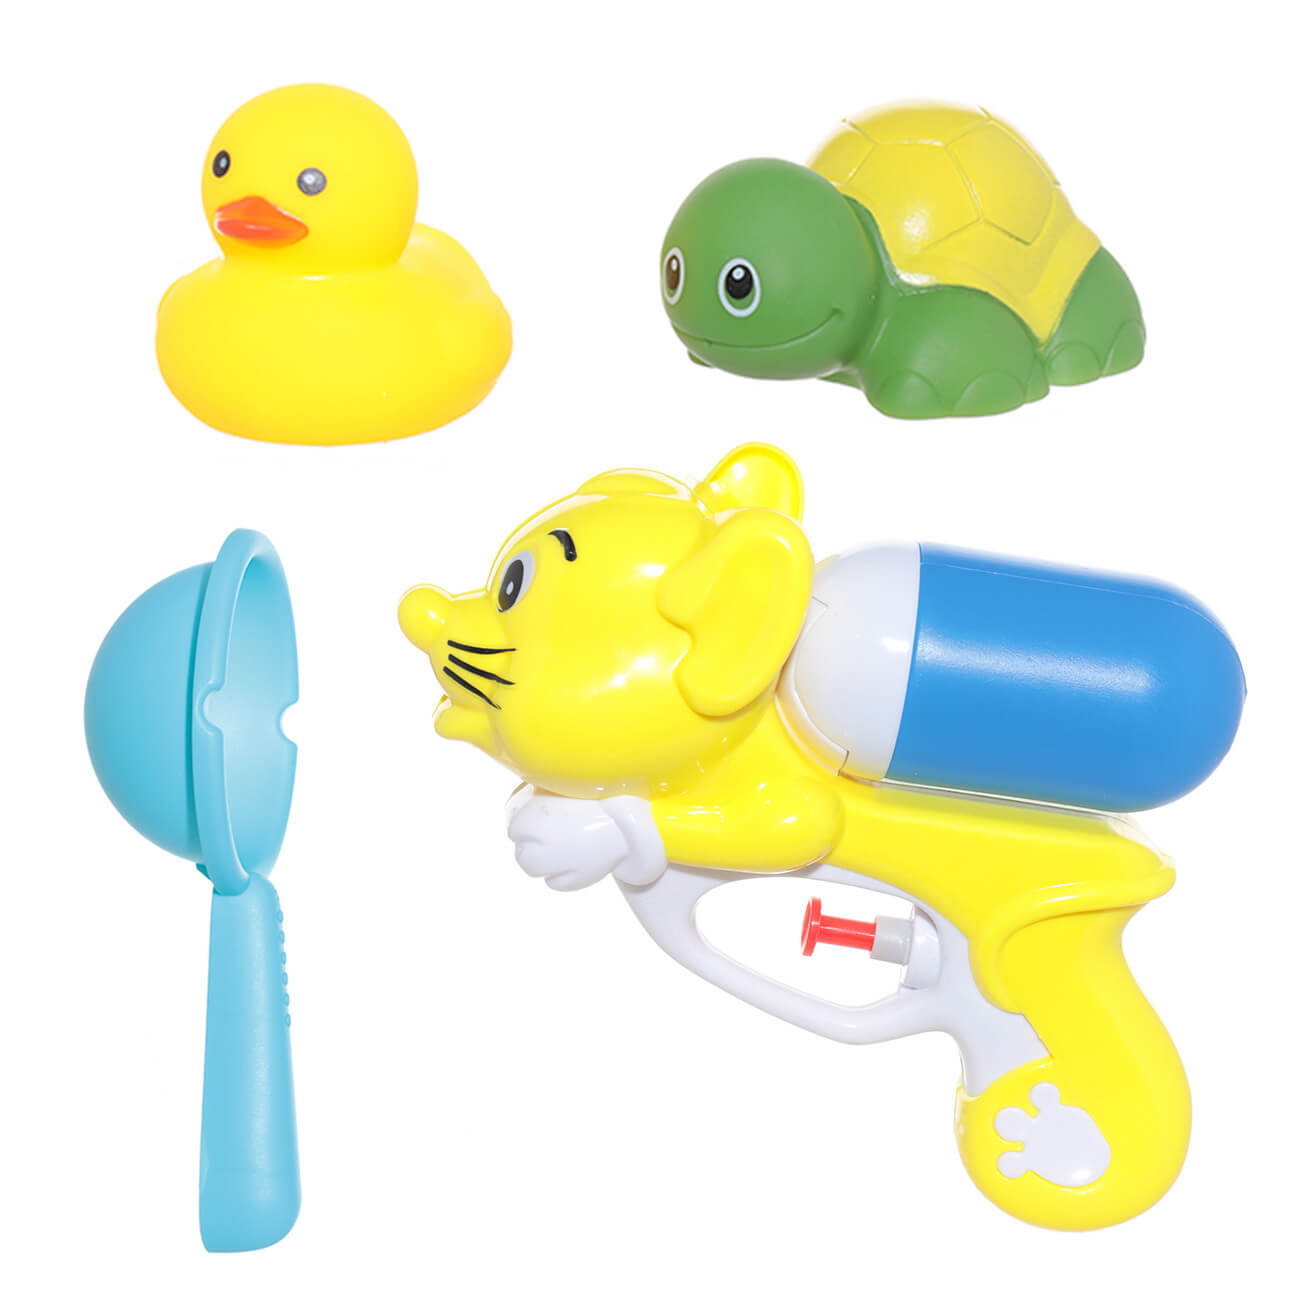 Набор игрушек для купания, 4 пр, водный пистолет/игрушки, резина/пластик, желтый, Duck набор ёлочных игрушек ёлочные игрушки дерево